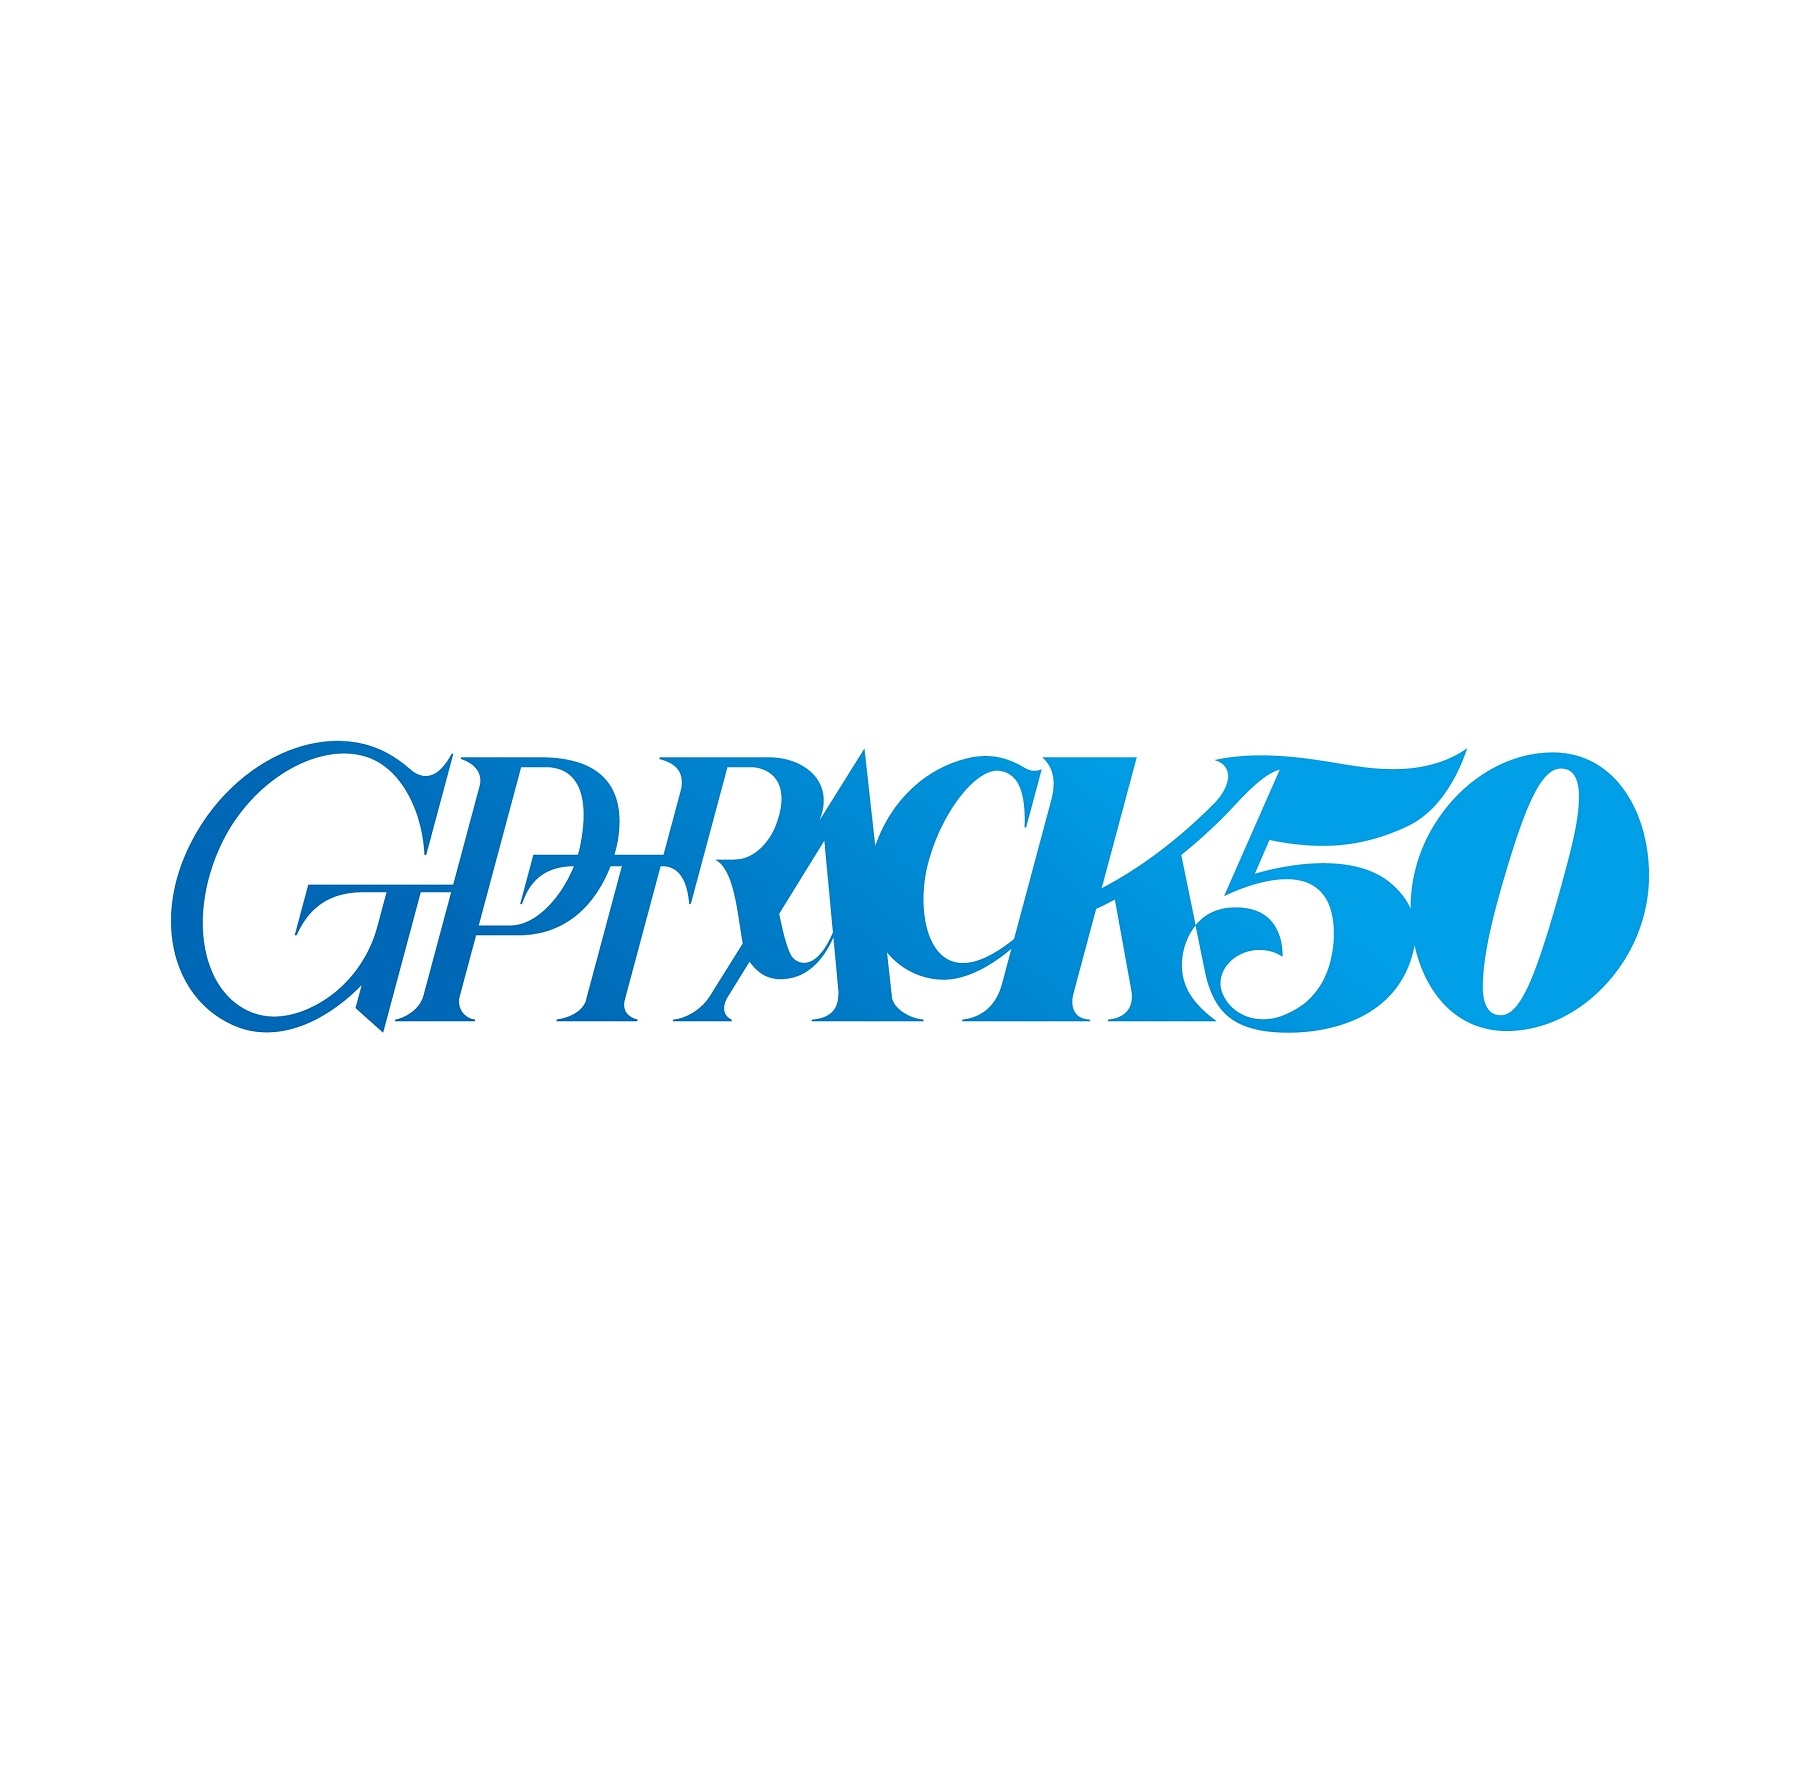 网易在日本成立原创游戏开发工作室「GPTRACK50」，小林裕幸担任社长